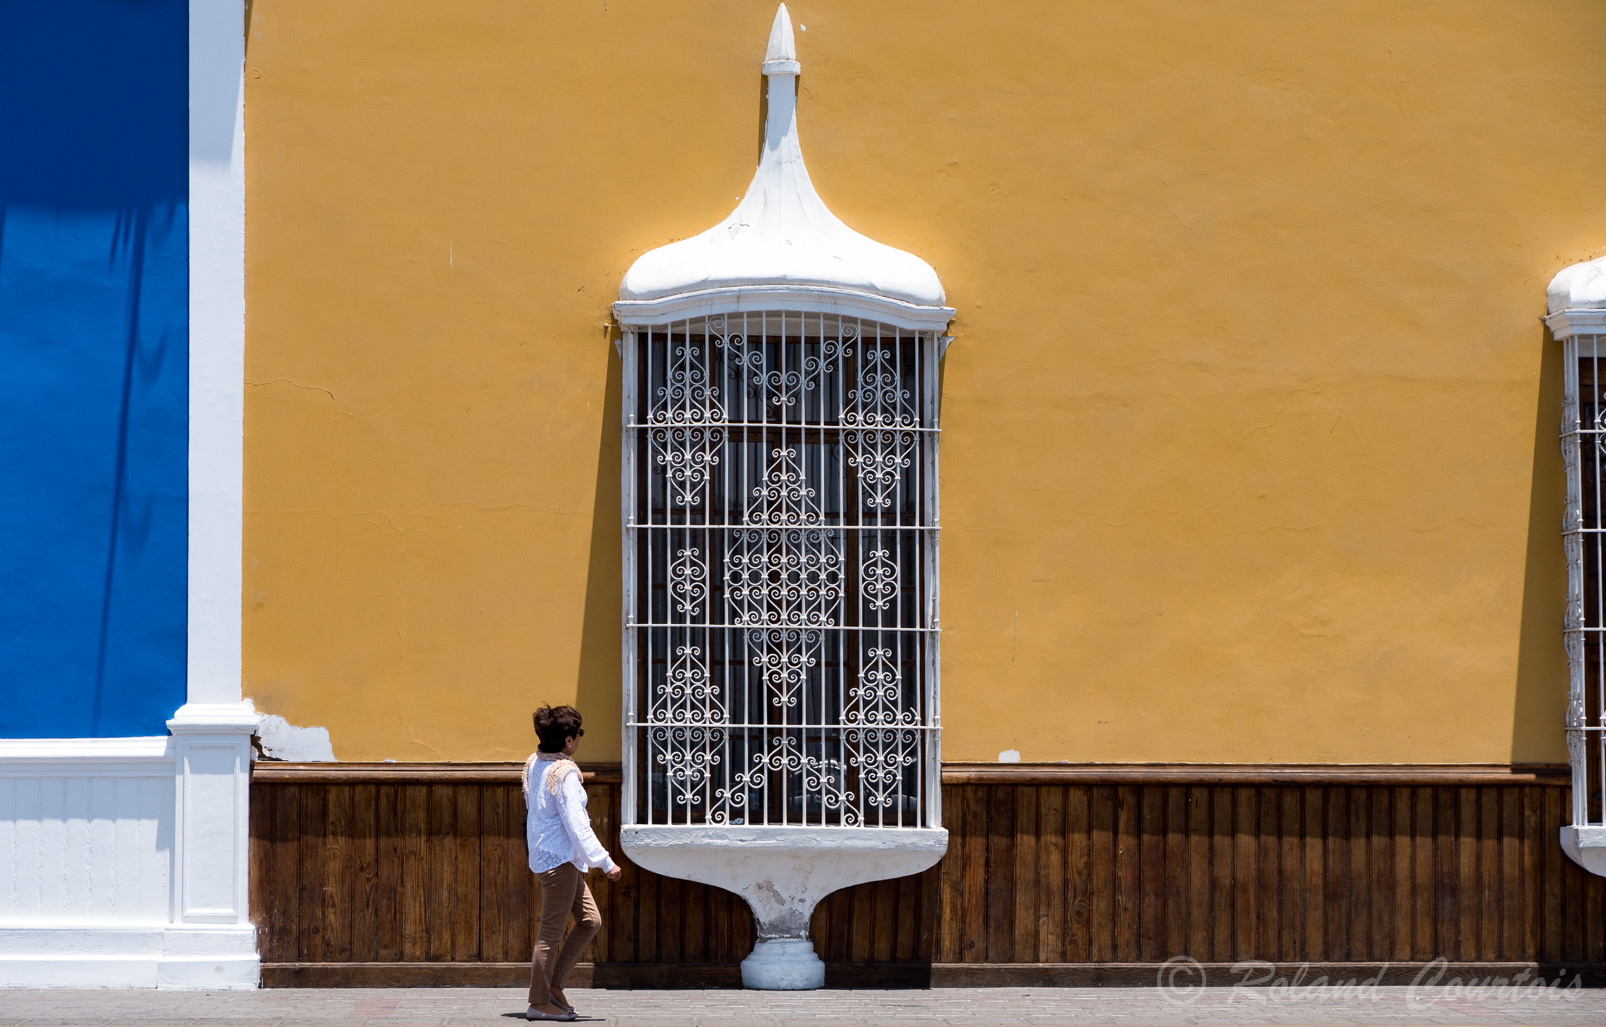 Fenêtres aux grilles blanches du style colonial  sur la Place d'armes de Trujillo.